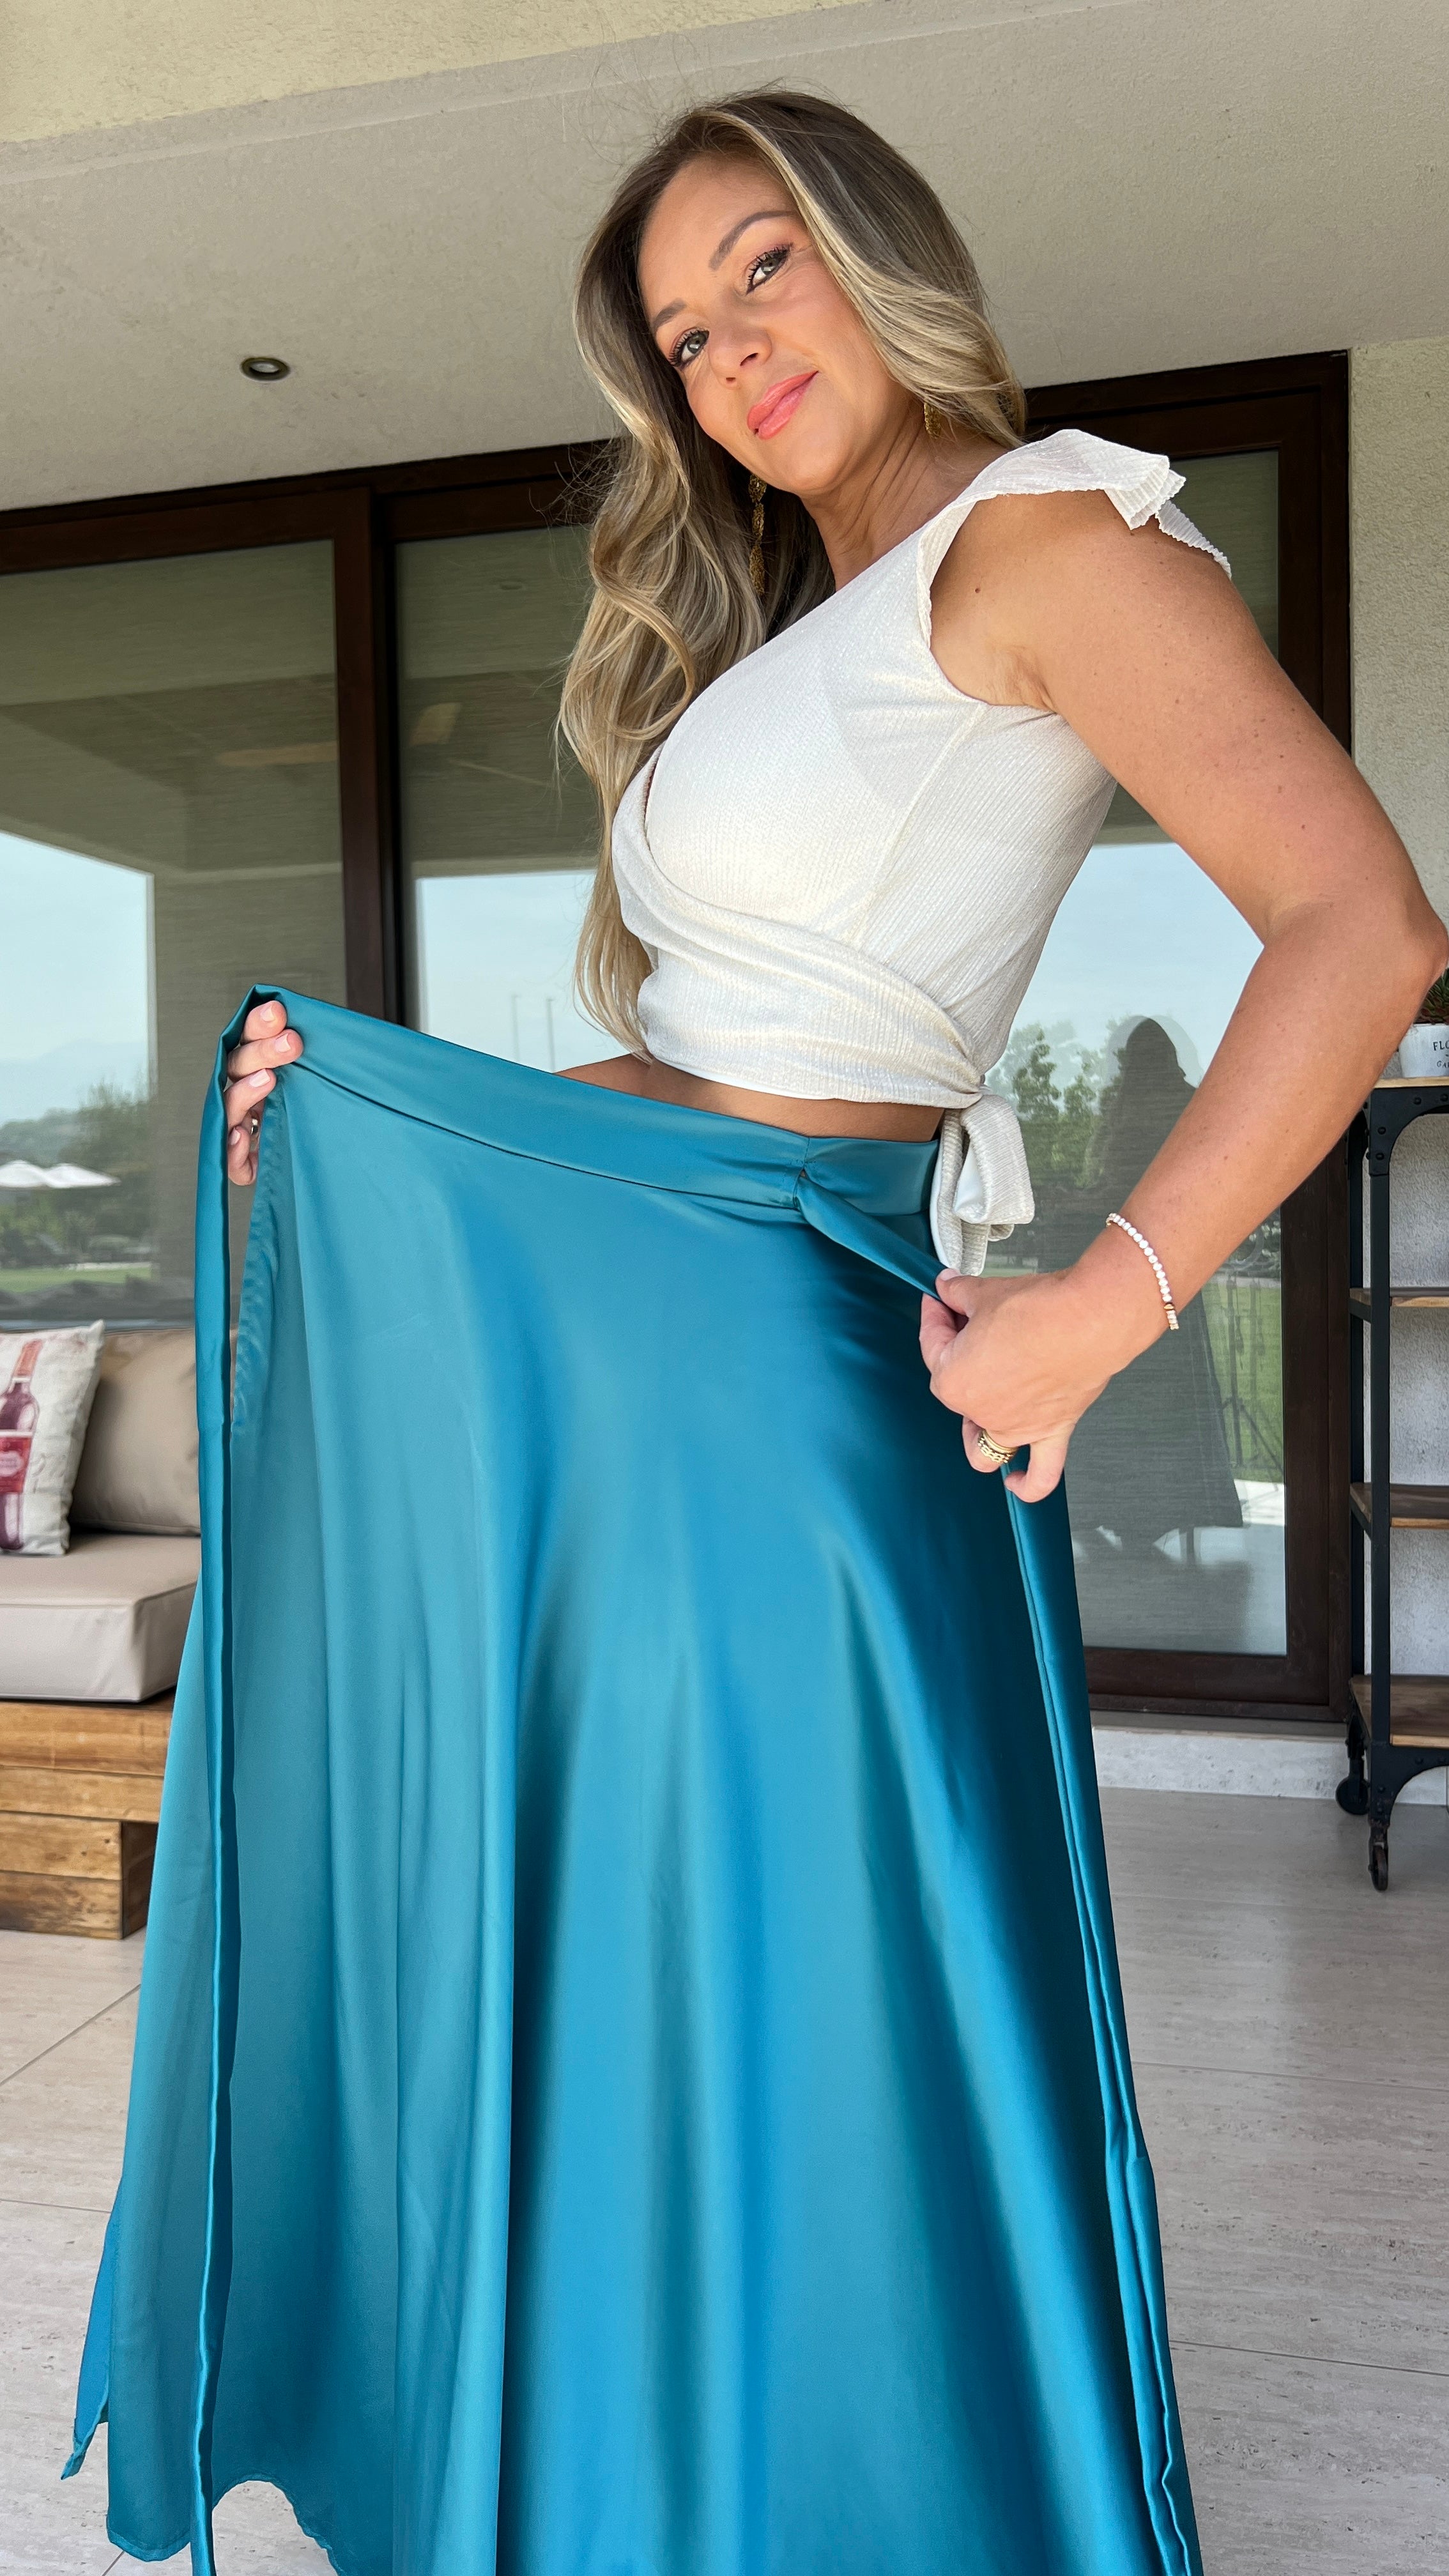 Falda envolvente piel de seda azul verdoso | falda larga satinada azul | Amoramar.cl 4